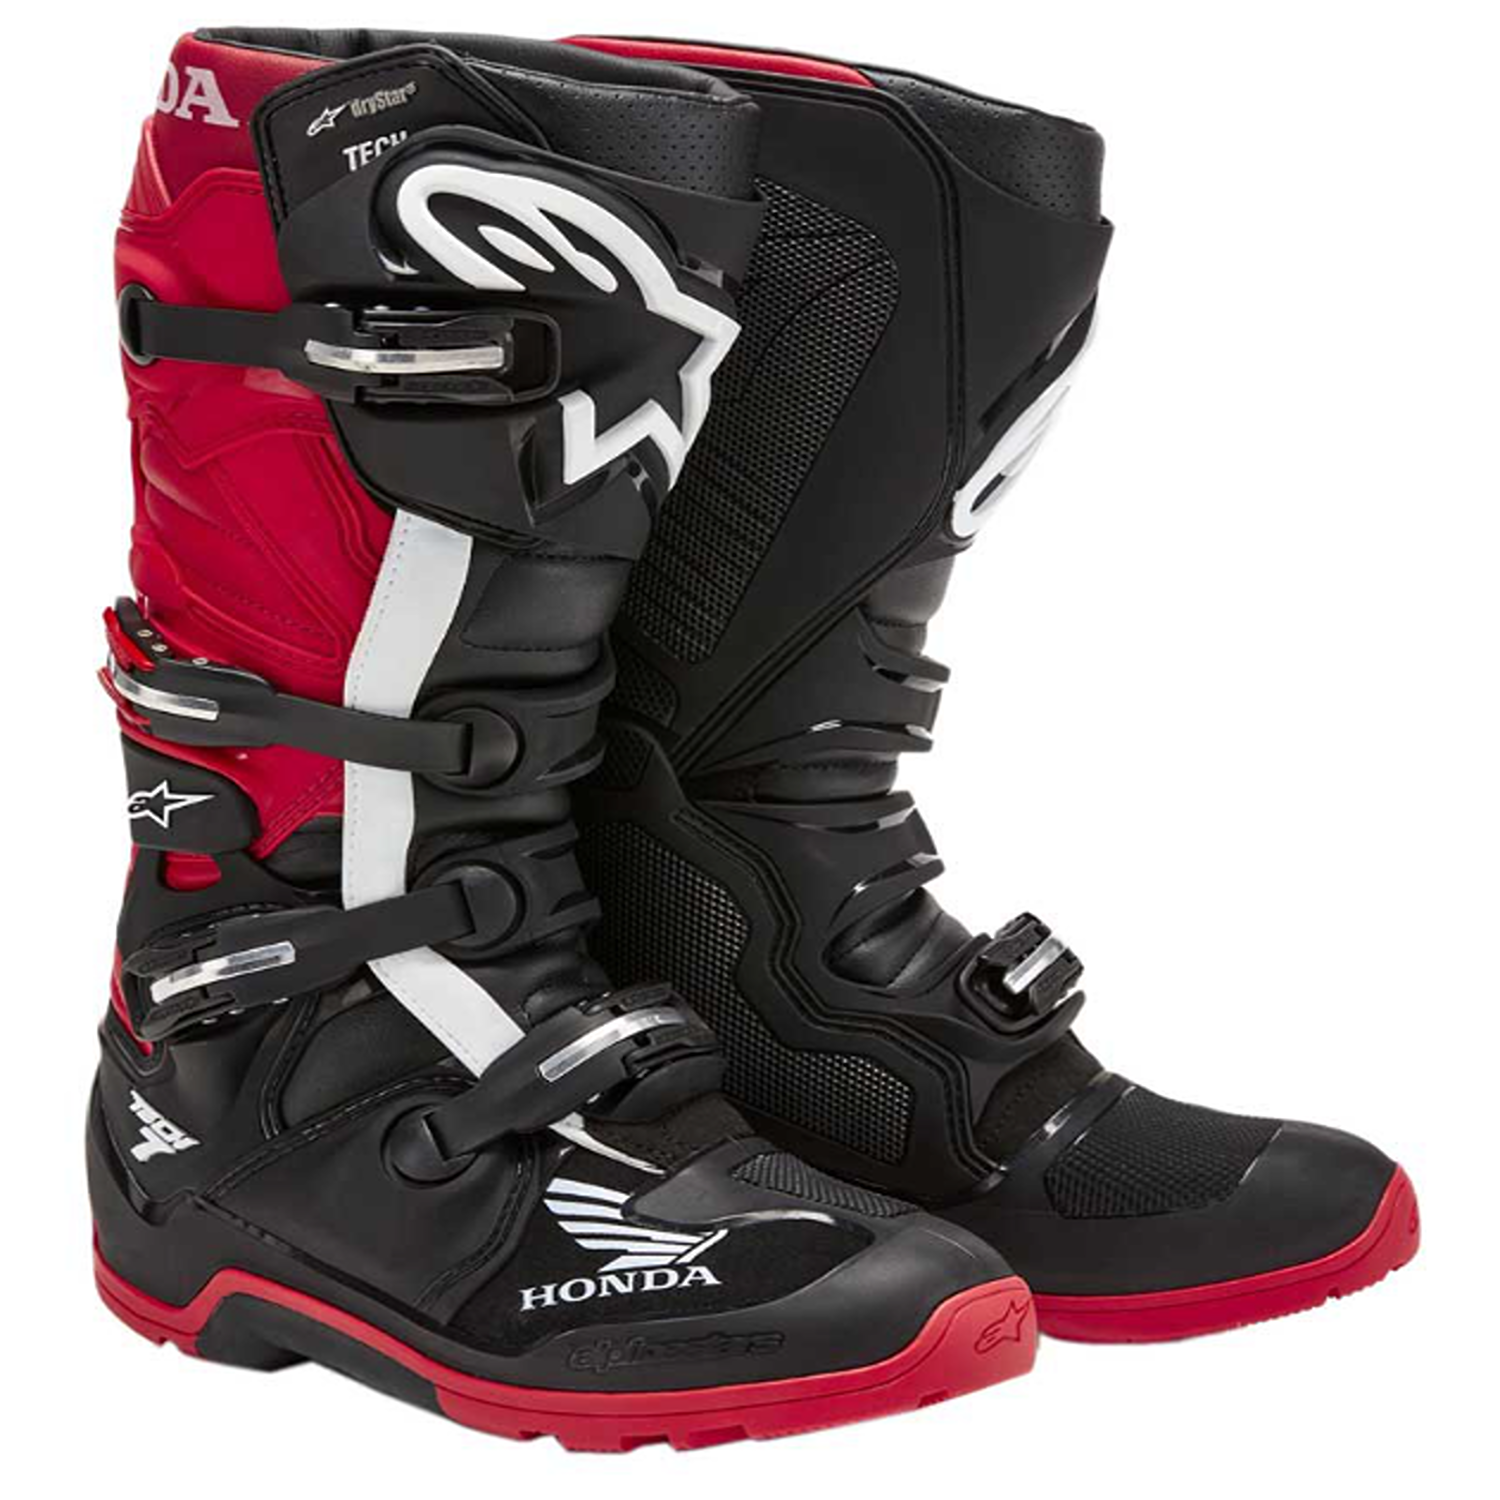 Image of Alpinestars Honda Tech 7 Enduro Drystar Boots Black Bright Red Size US 8 EN